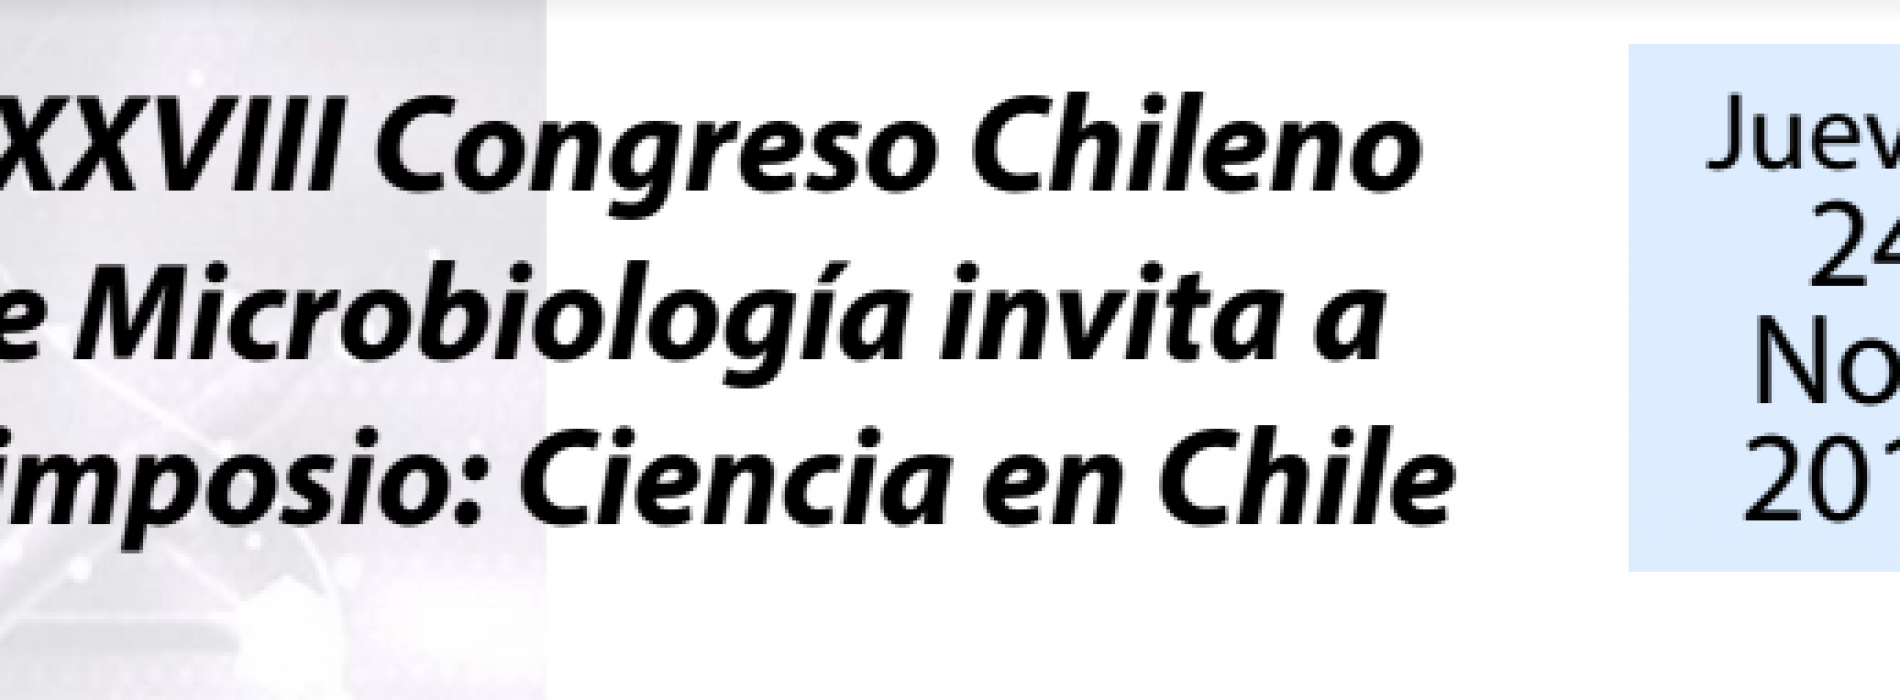 SOMICH: Simposio: Ciencia en Chile, Con miras a un nuevo Ministerio de Ciencia y Tecnología